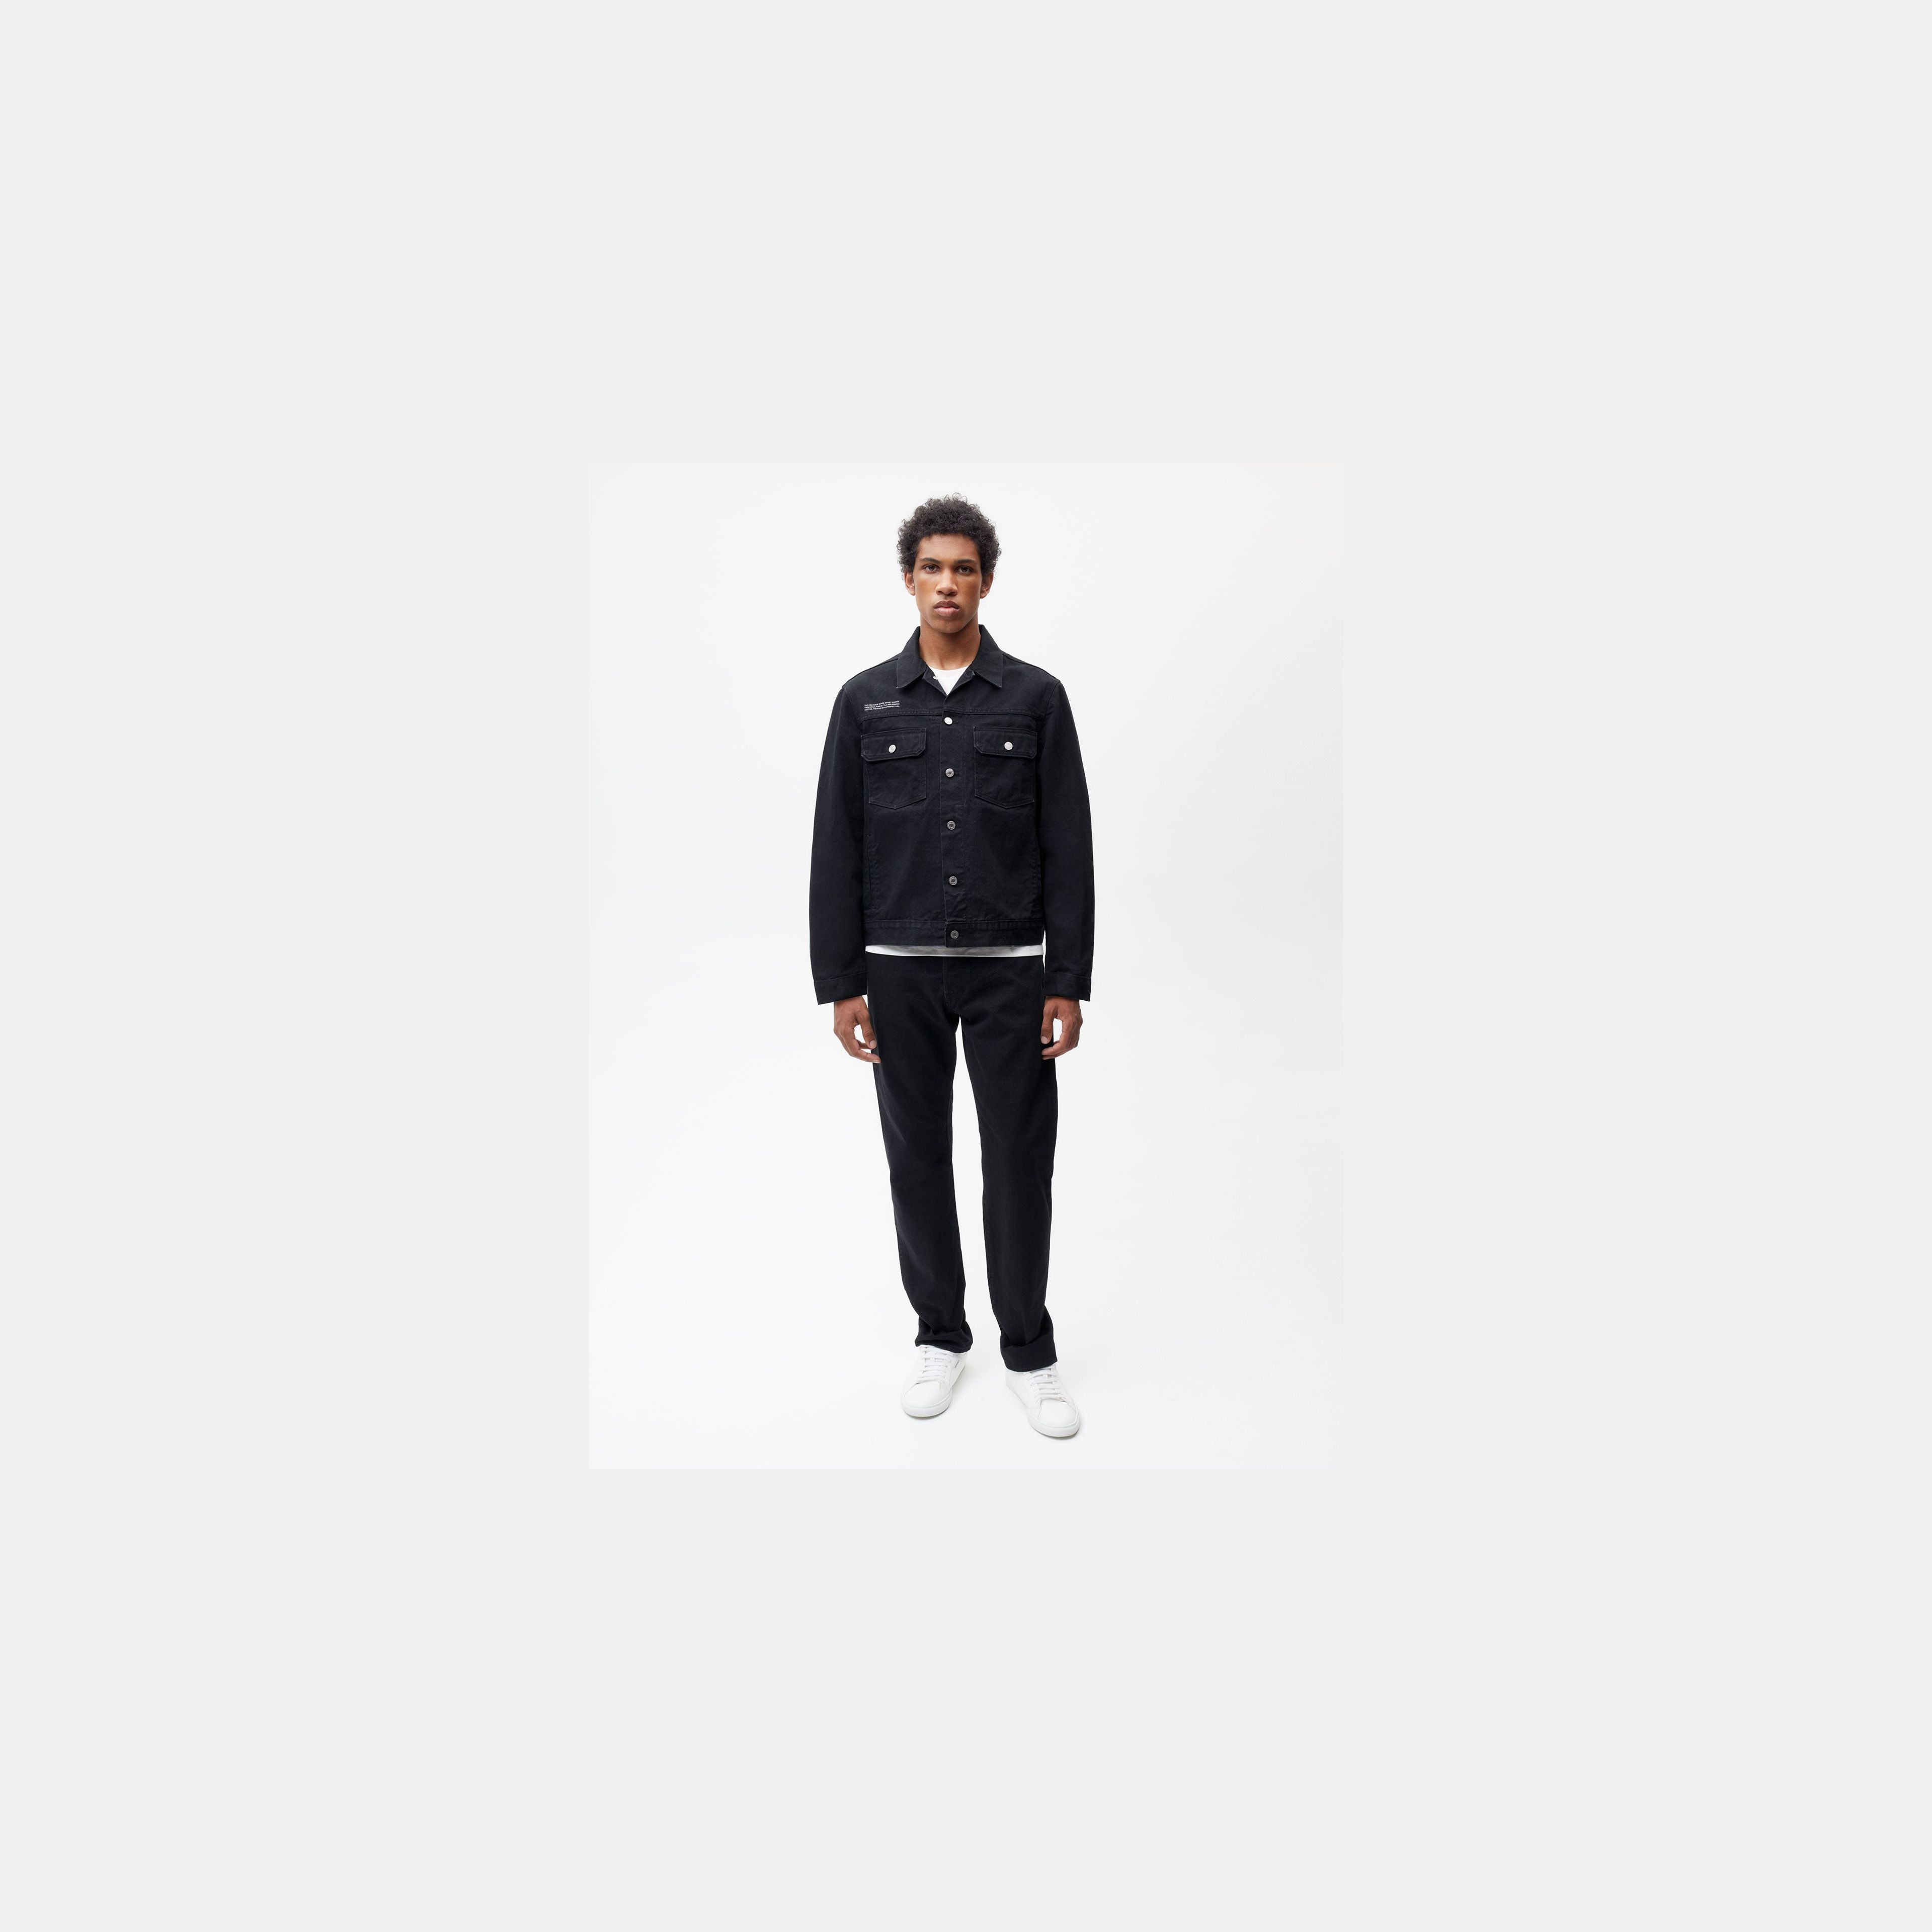 Nettle Denim Jacket—black